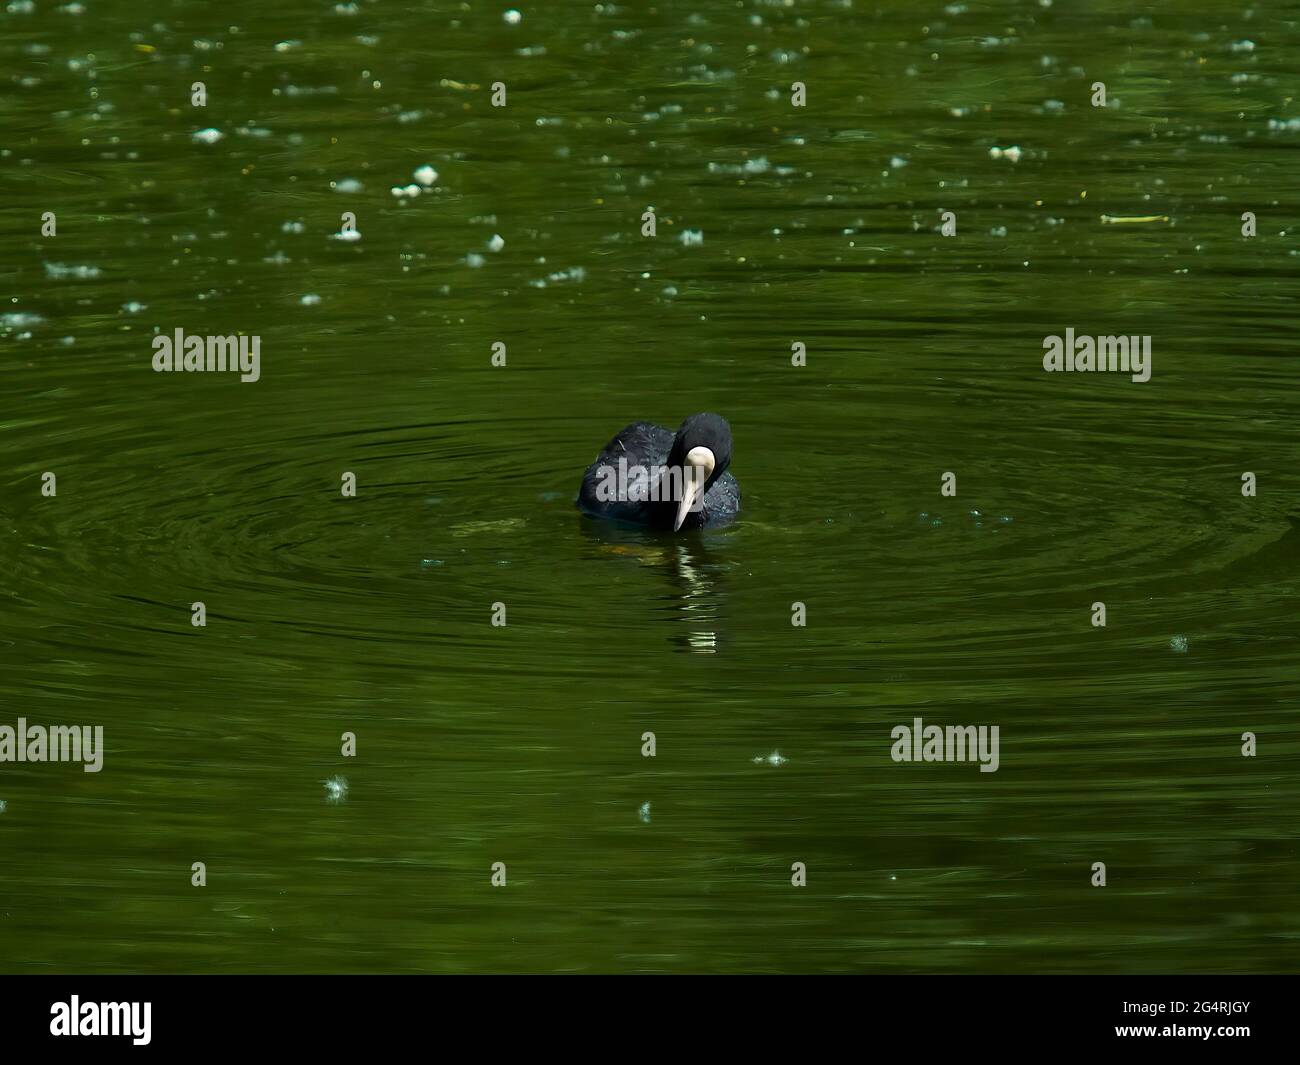 Ein Ruß hält in seinem Schwimmen über glasigen Gewässern spiegelt die Bäume rund um Hampstead Pond und scheint zu seiner eigenen Reflexion zu blicken. Stockfoto